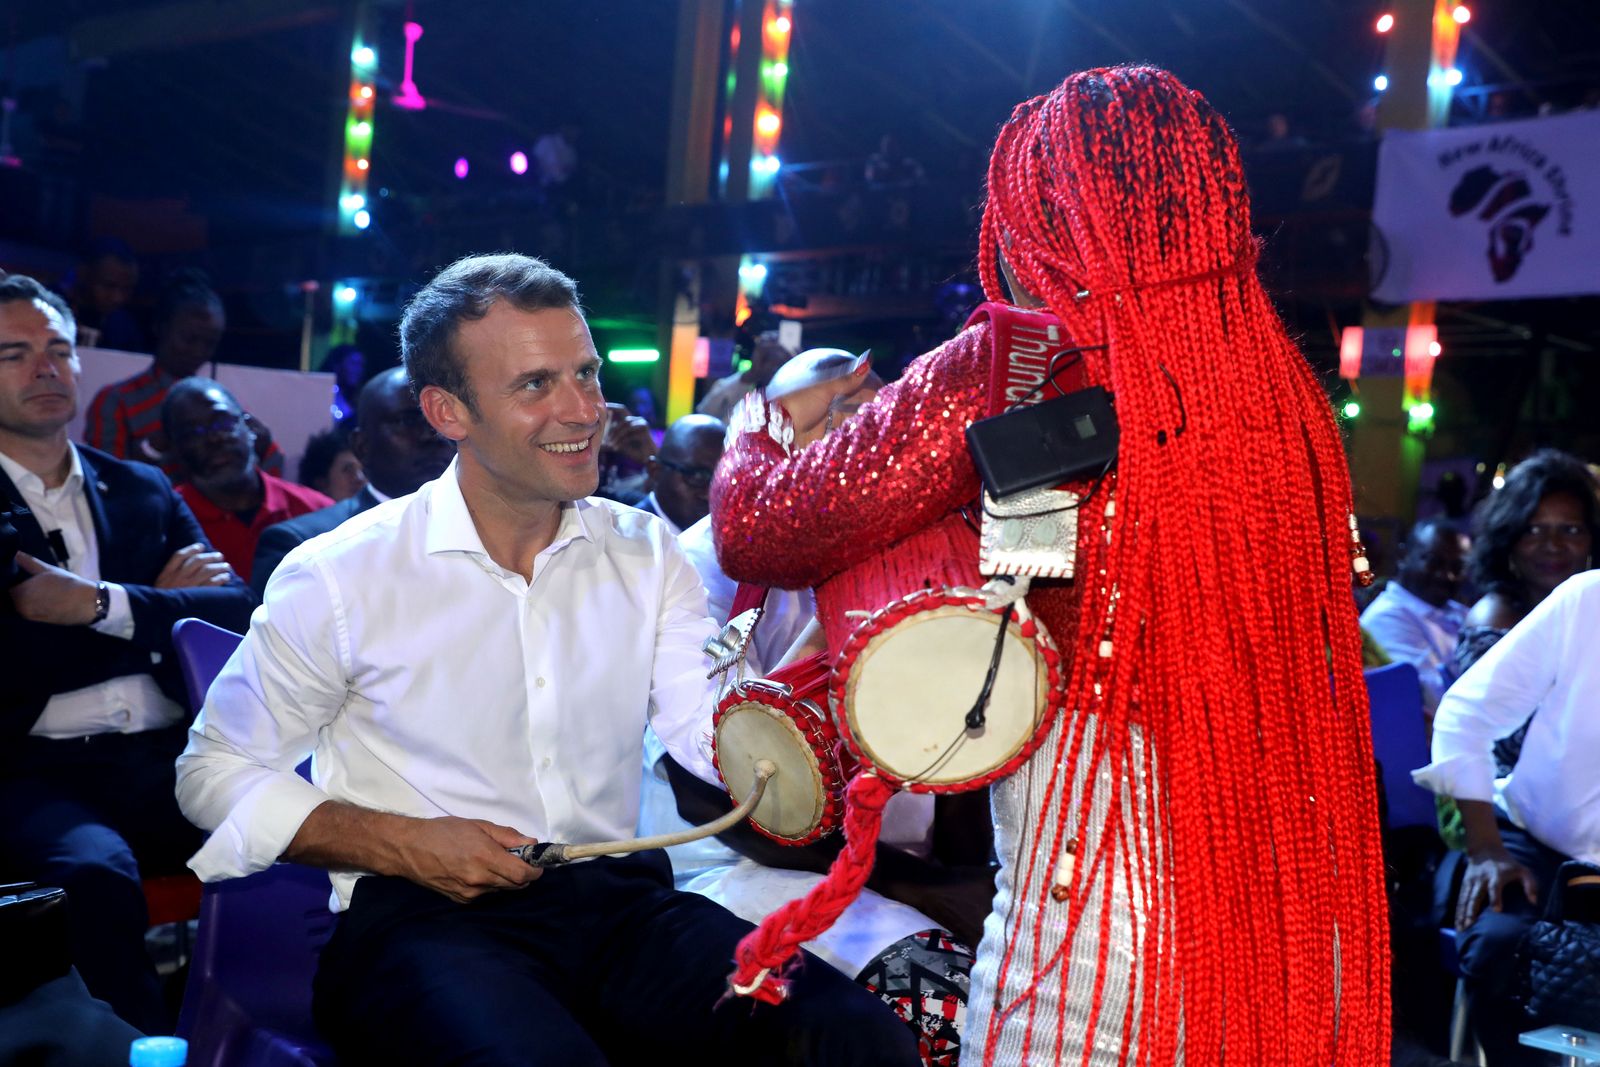 الرئيس الفرنسي إيمانويل ماكرون يعزف مع موسيقيين في لاغوس بنيجيريا - 3 يوليو 2018 - REUTERS